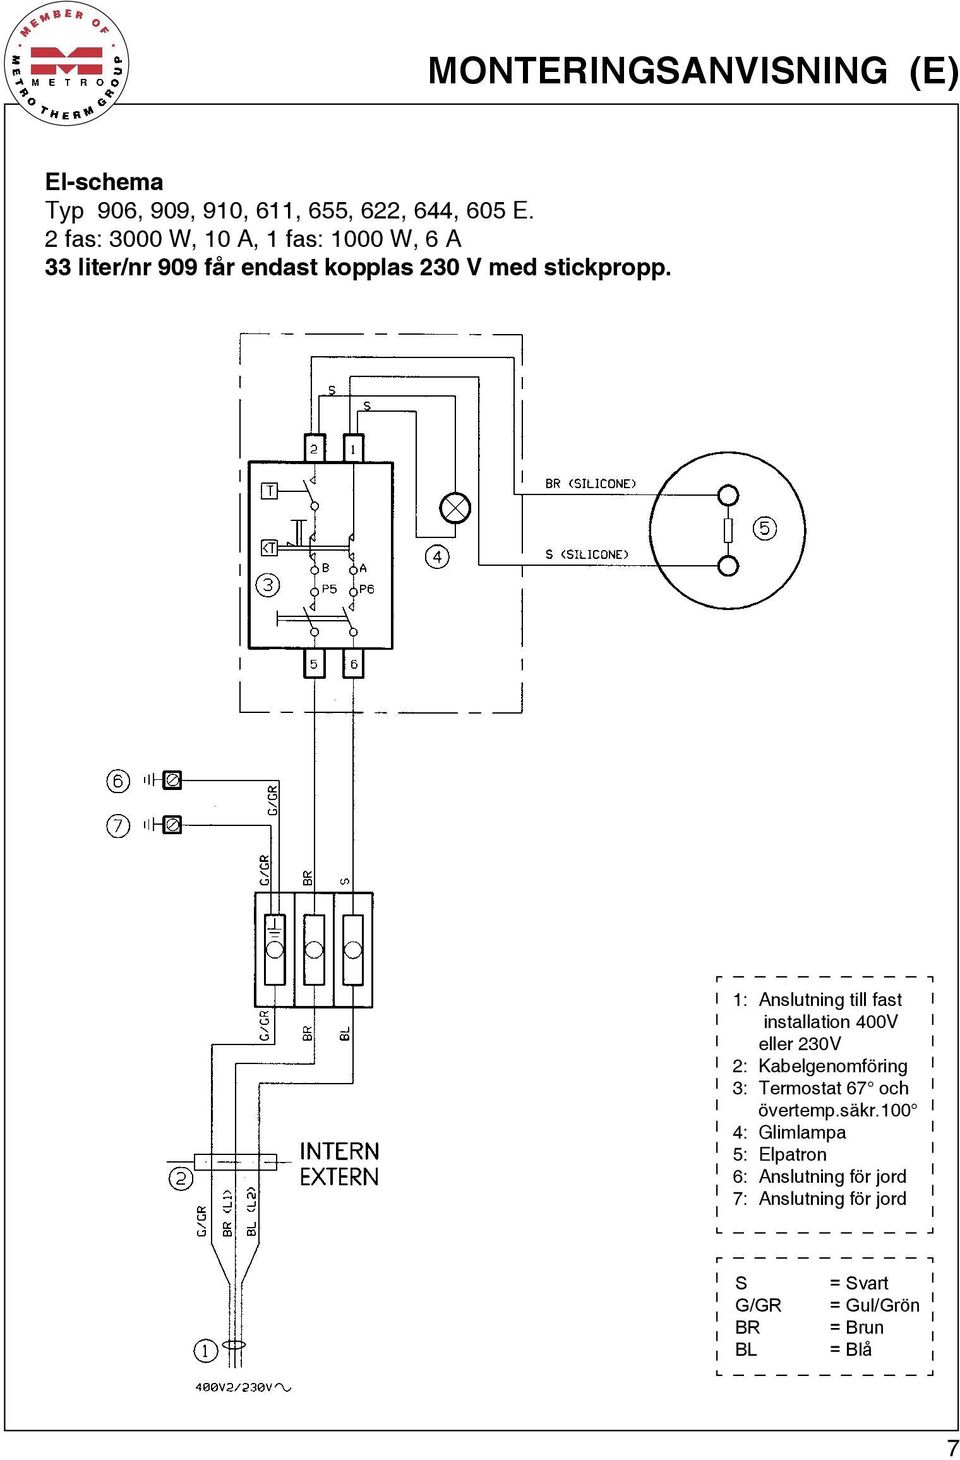 1: Anslutning till fast installation 400V eller 230V 2: Kabelgenomföring 3: Termostat 67 och övertemp.